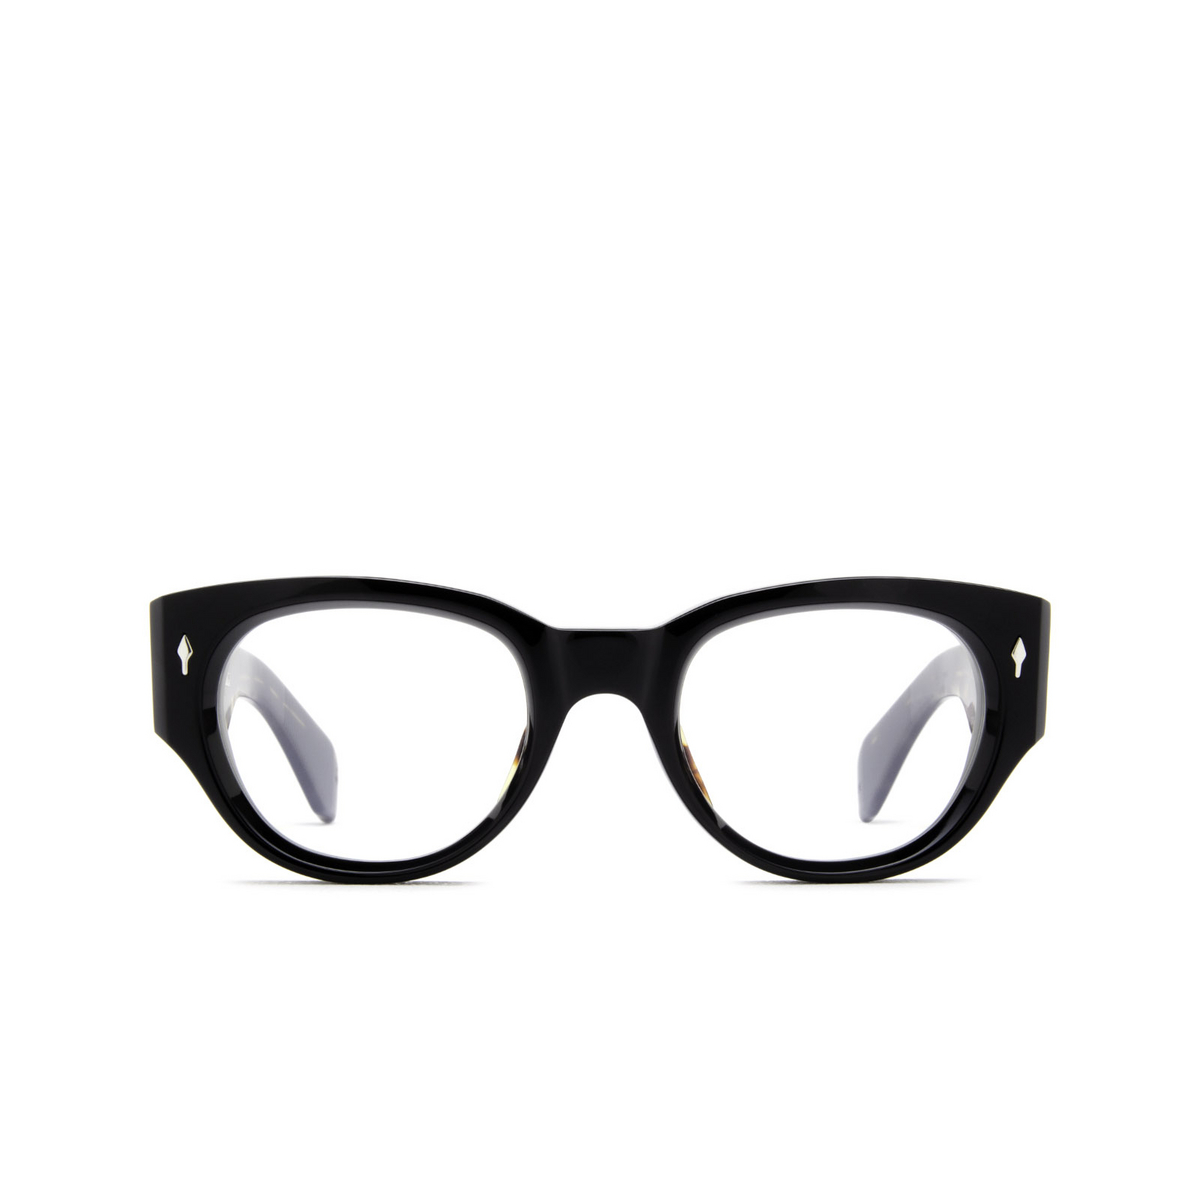 Jacques Marie Mage® Square Eyeglasses: Altabani color Noir - front view